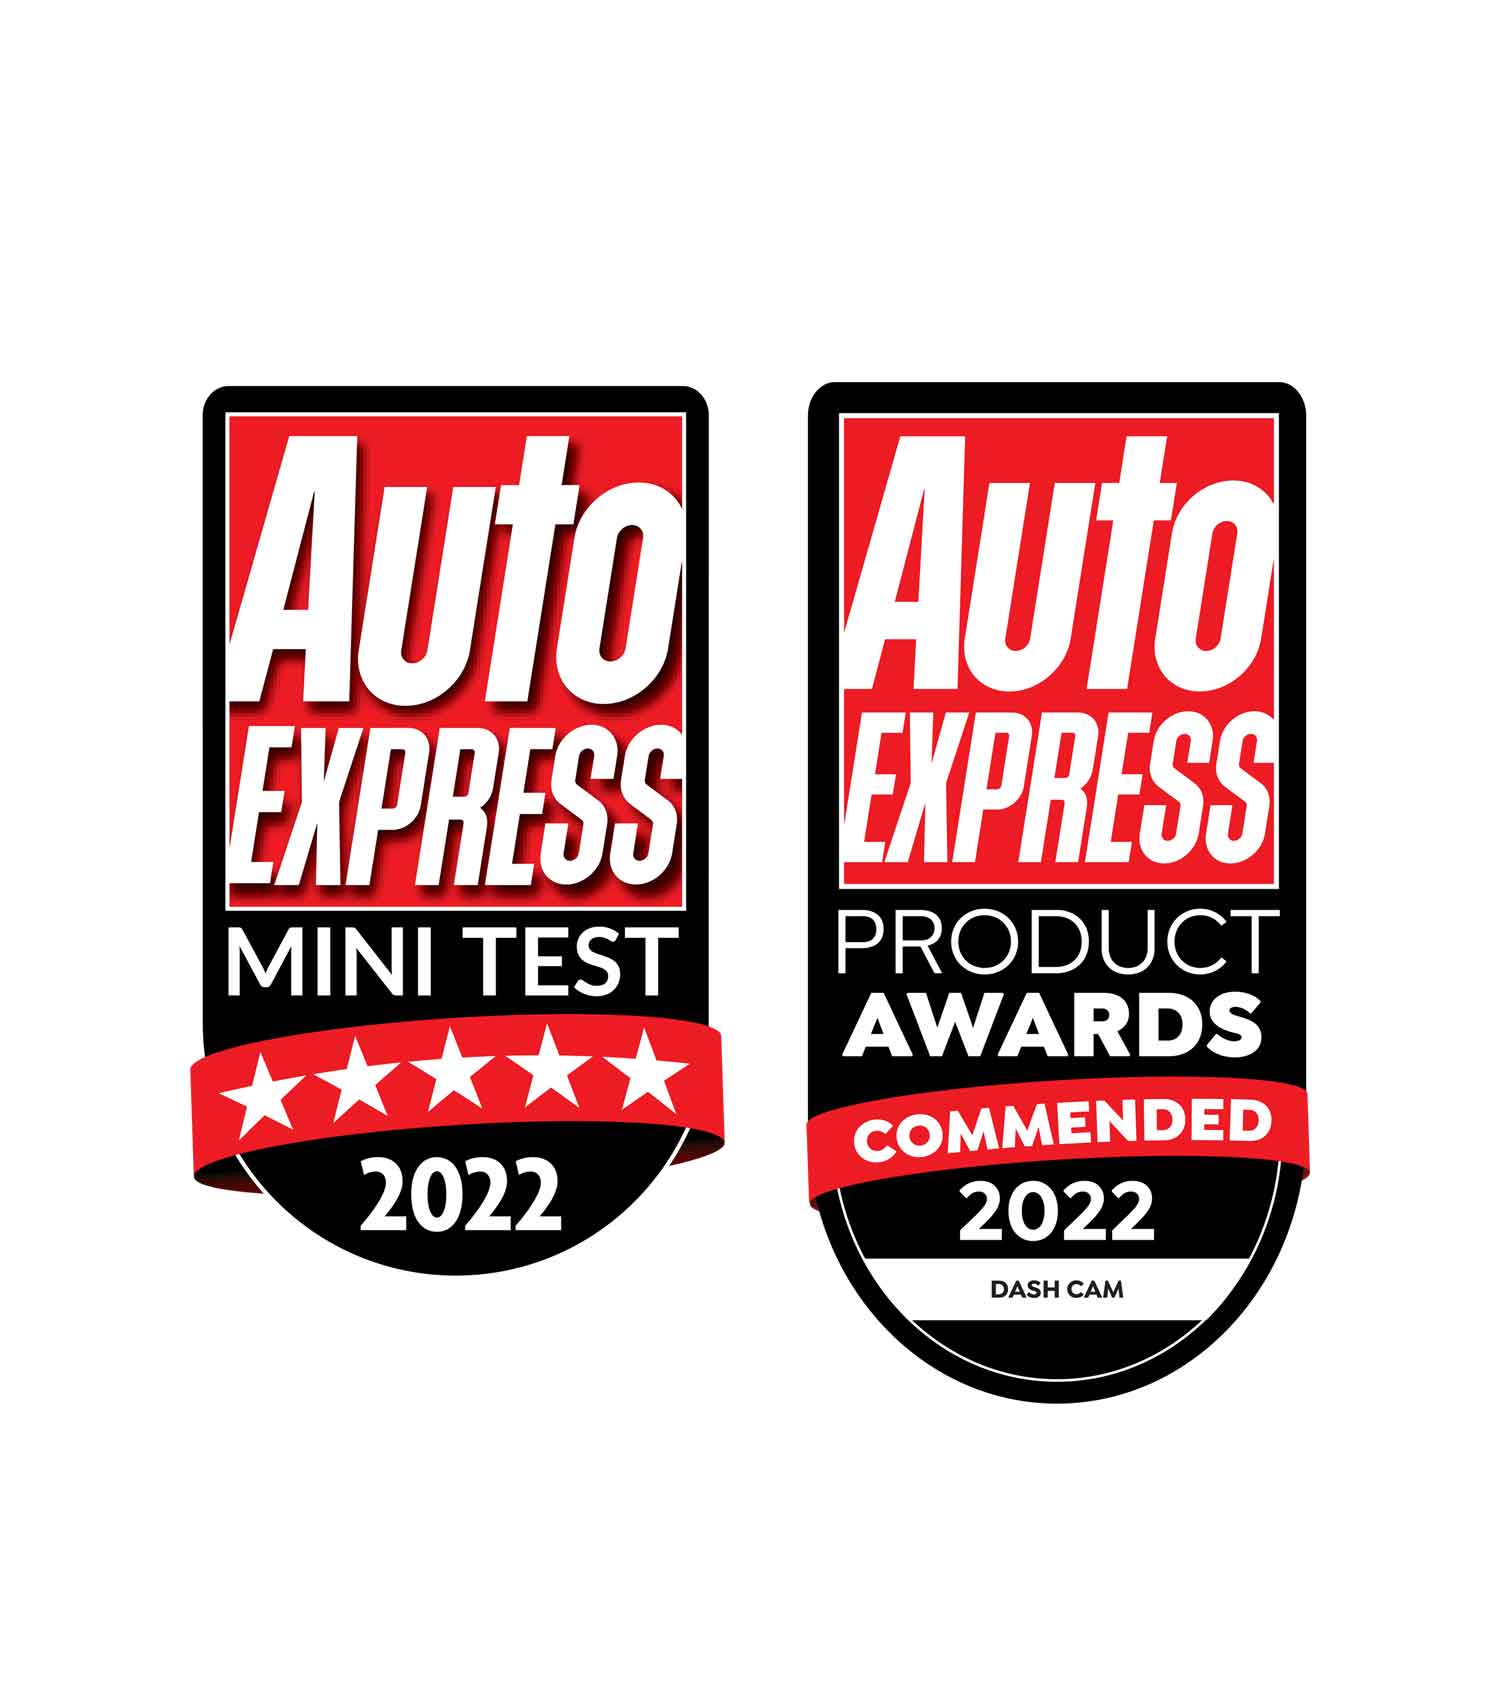 KENWOOD DRV-A501W dash cam Auto Express Awards